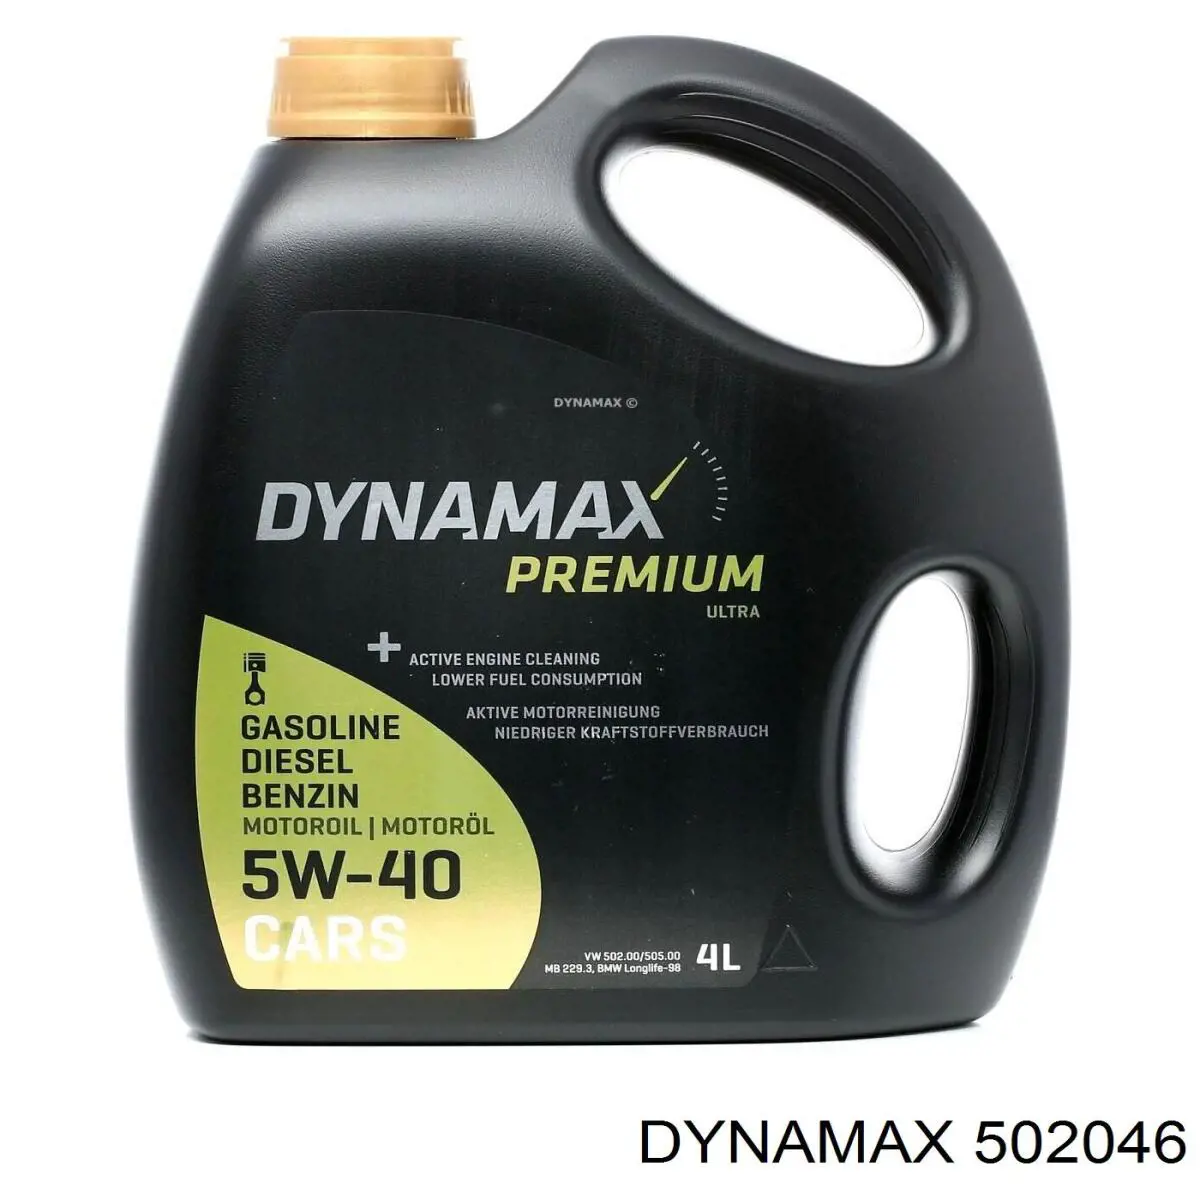 Dynamax (502046)